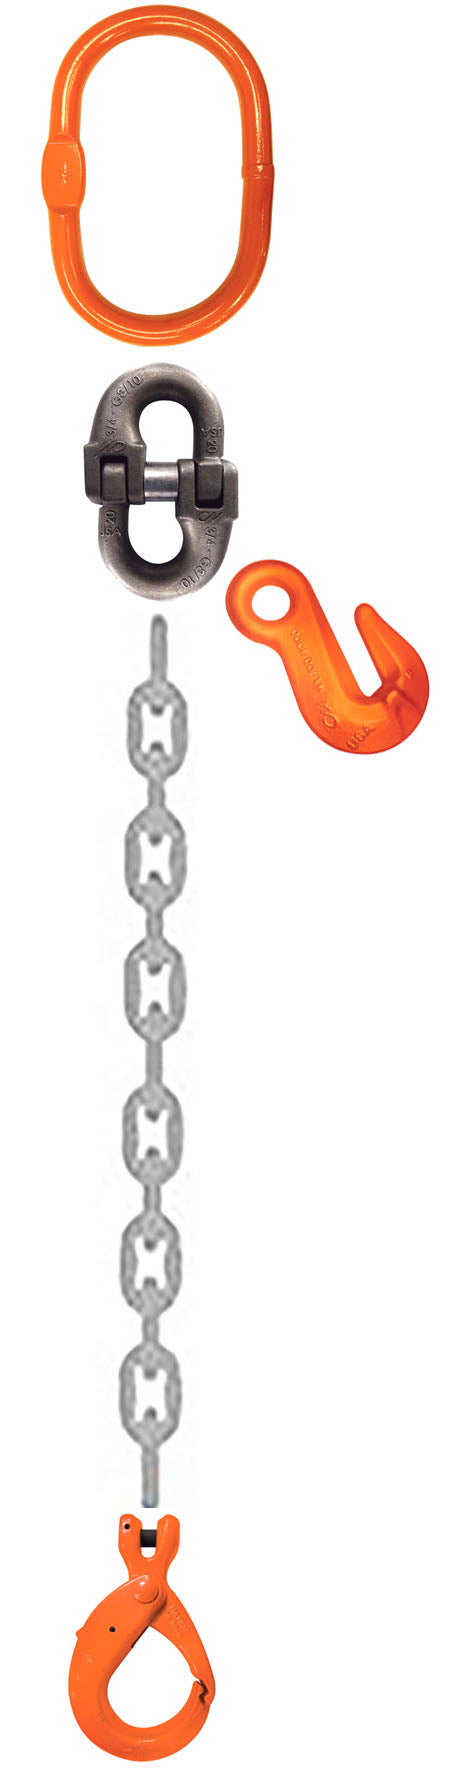 CM Grade 100 SOL 1 Leg Adjustable Type A Chain Sling - Clevlok Latchlok Hook